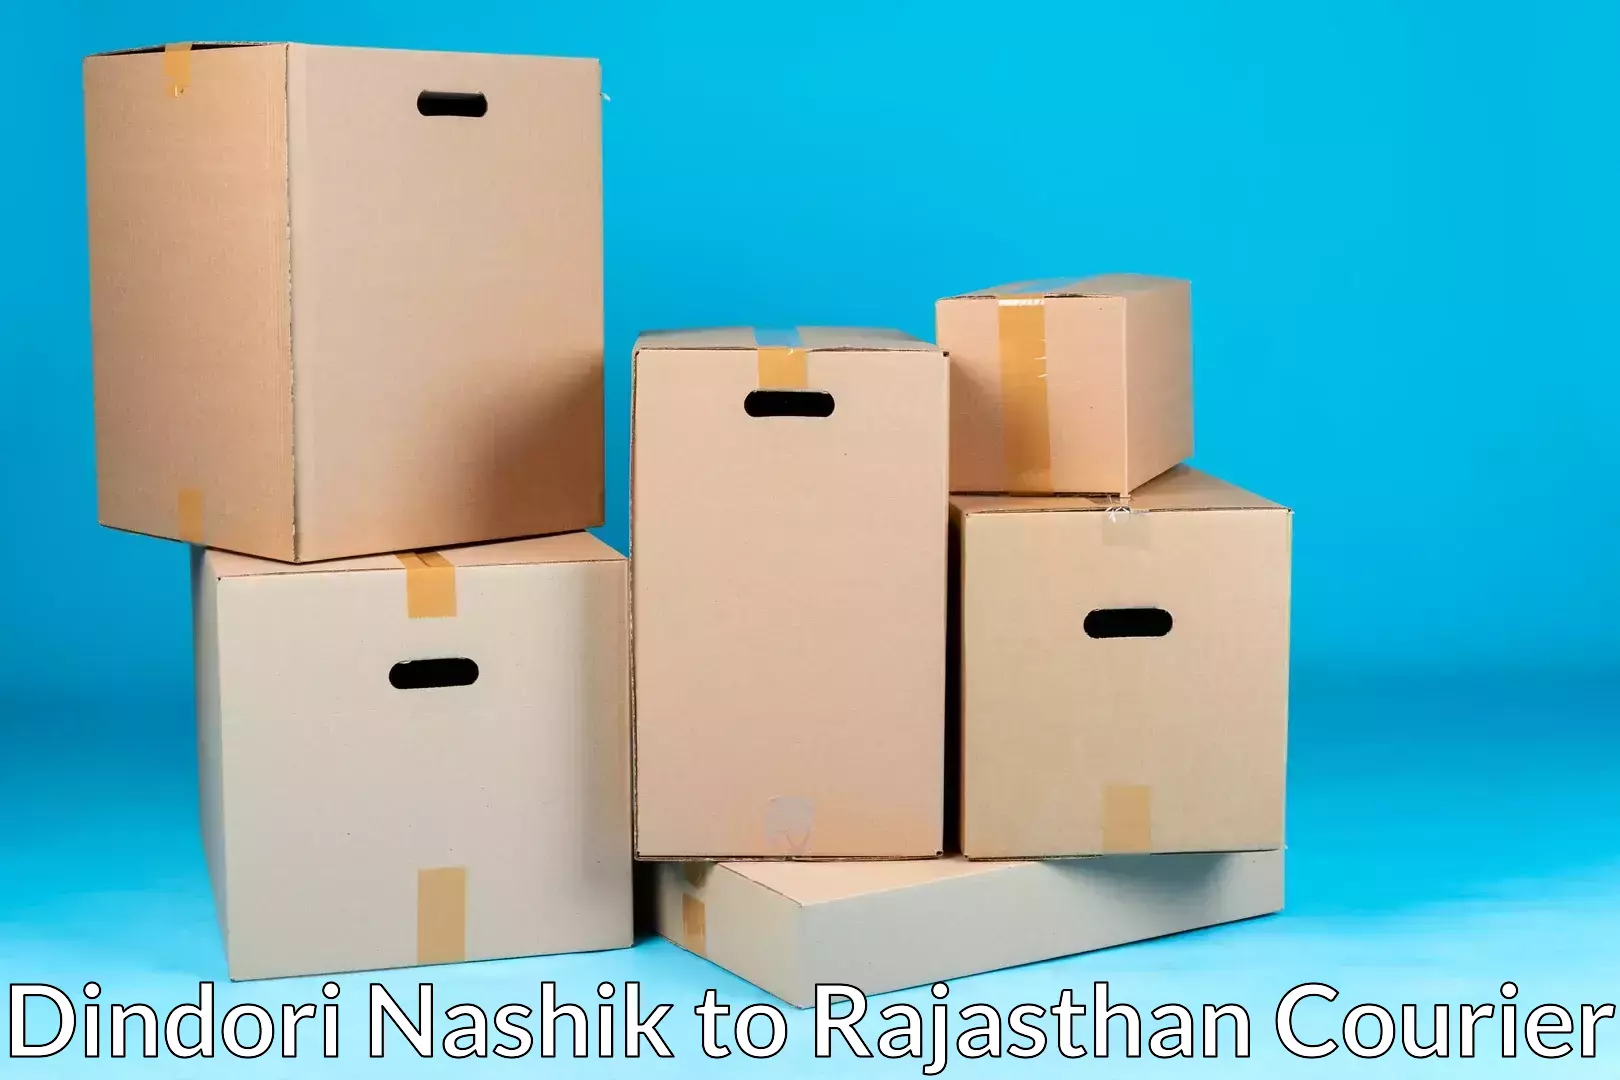 Full-service household moving in Dindori Nashik to Jawahar Nagar